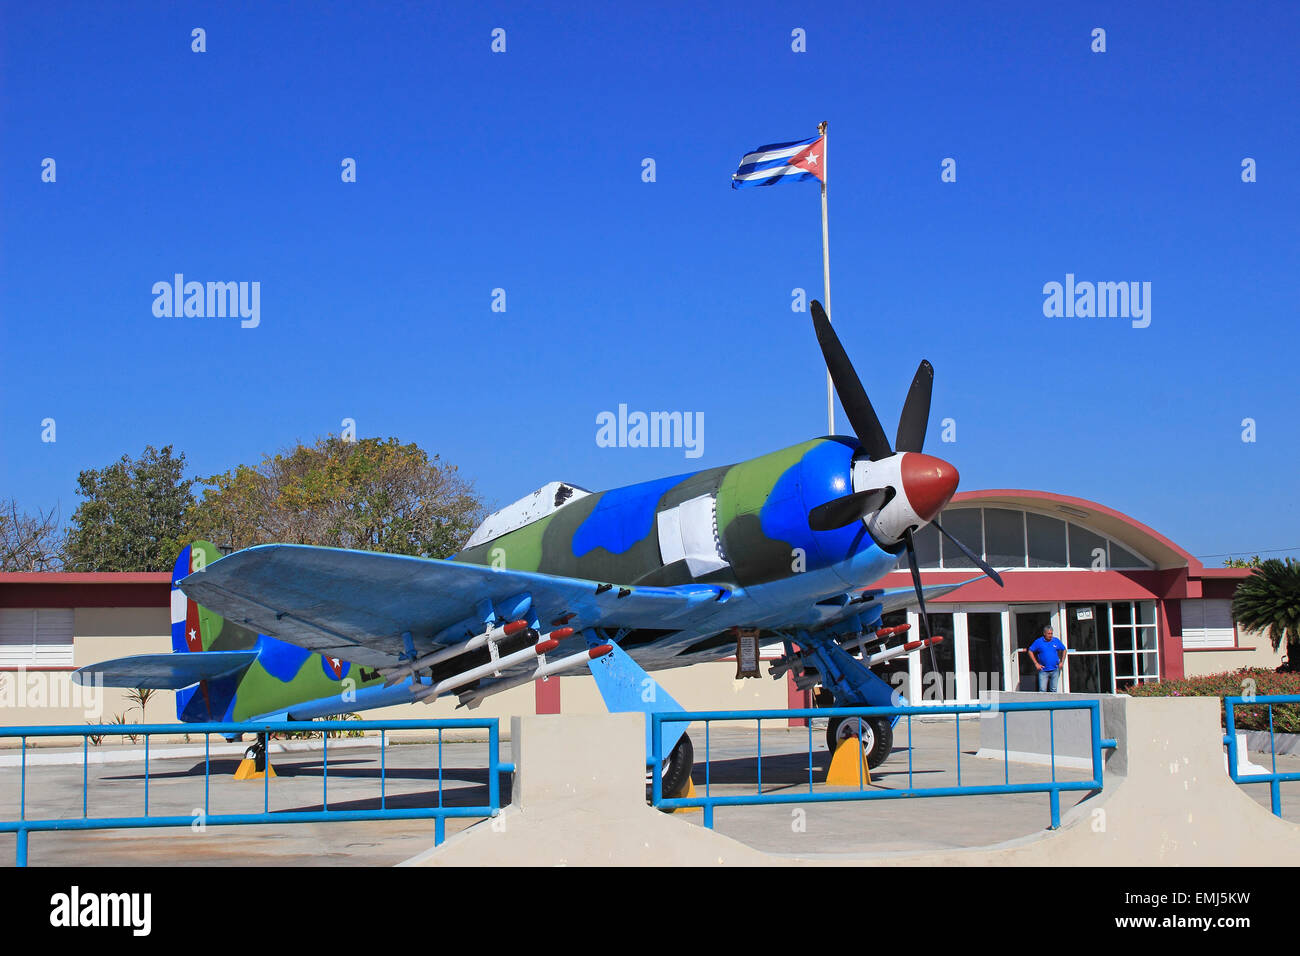 L'avion accidenté Musée de la Baie des Cochons à Cuba Playa Giron Banque D'Images